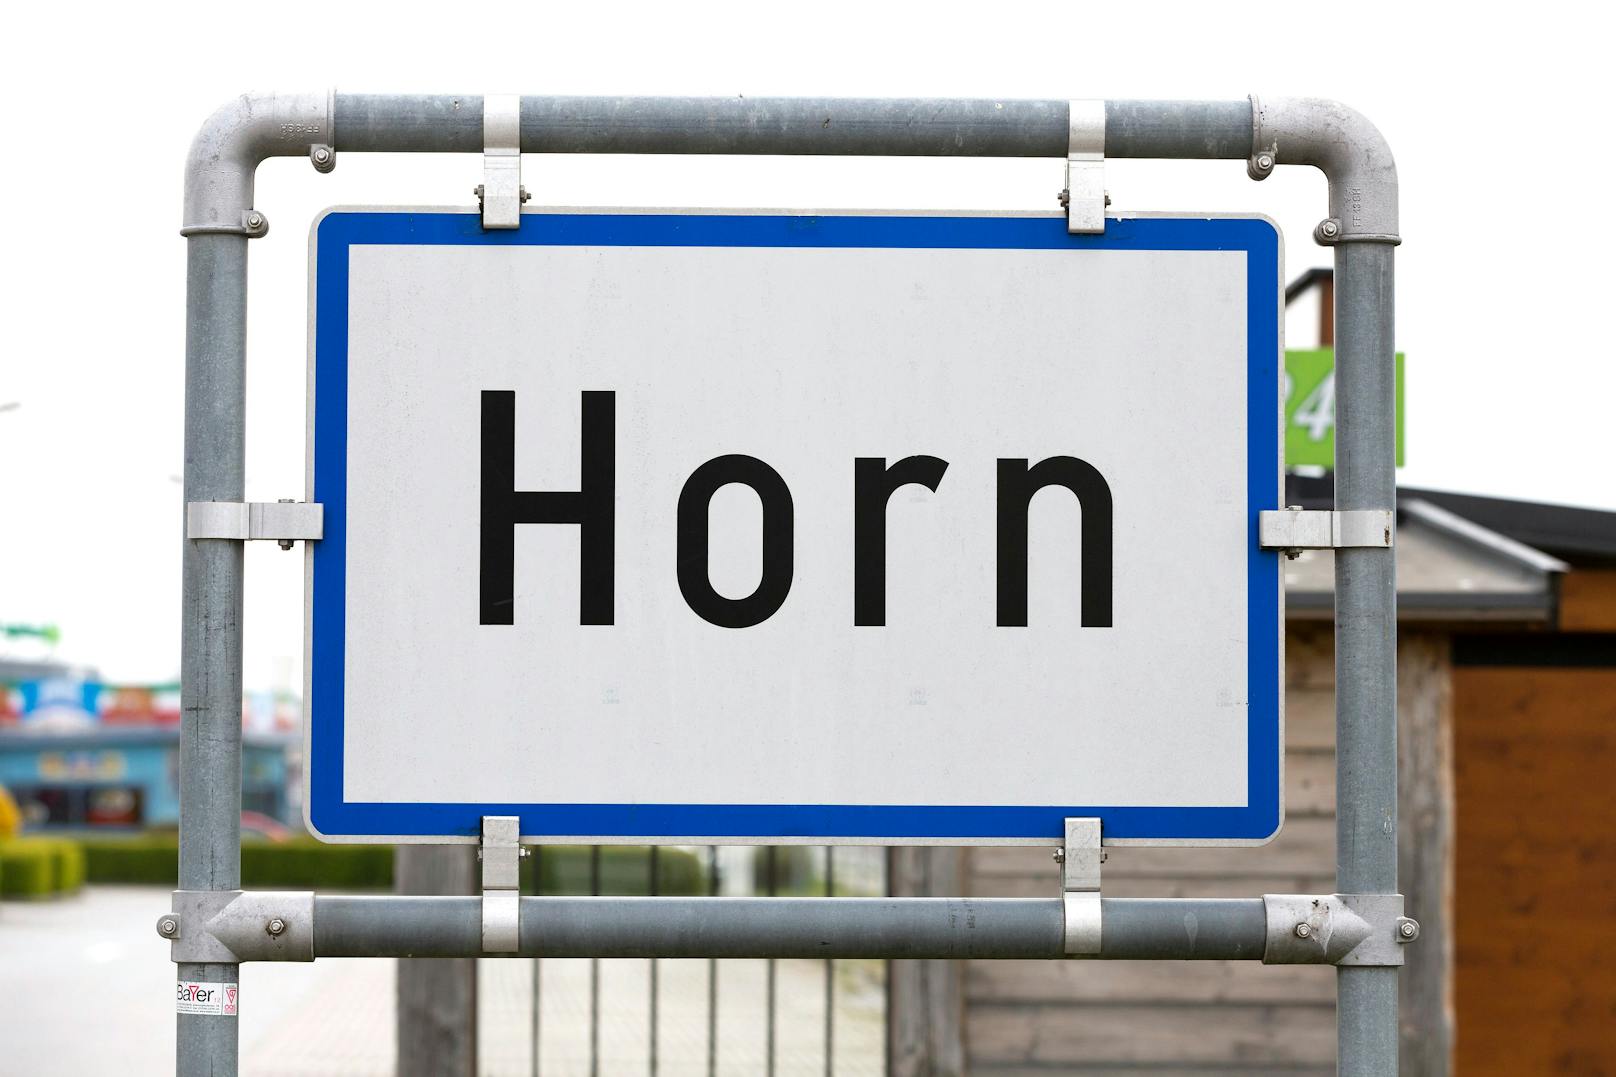 Und es geht zurück ins niederösterreichische Waldviertel: In <strong>Horn</strong> kommt der Quadratmeter für ein eigenes Haus auf 1.779 Euro.